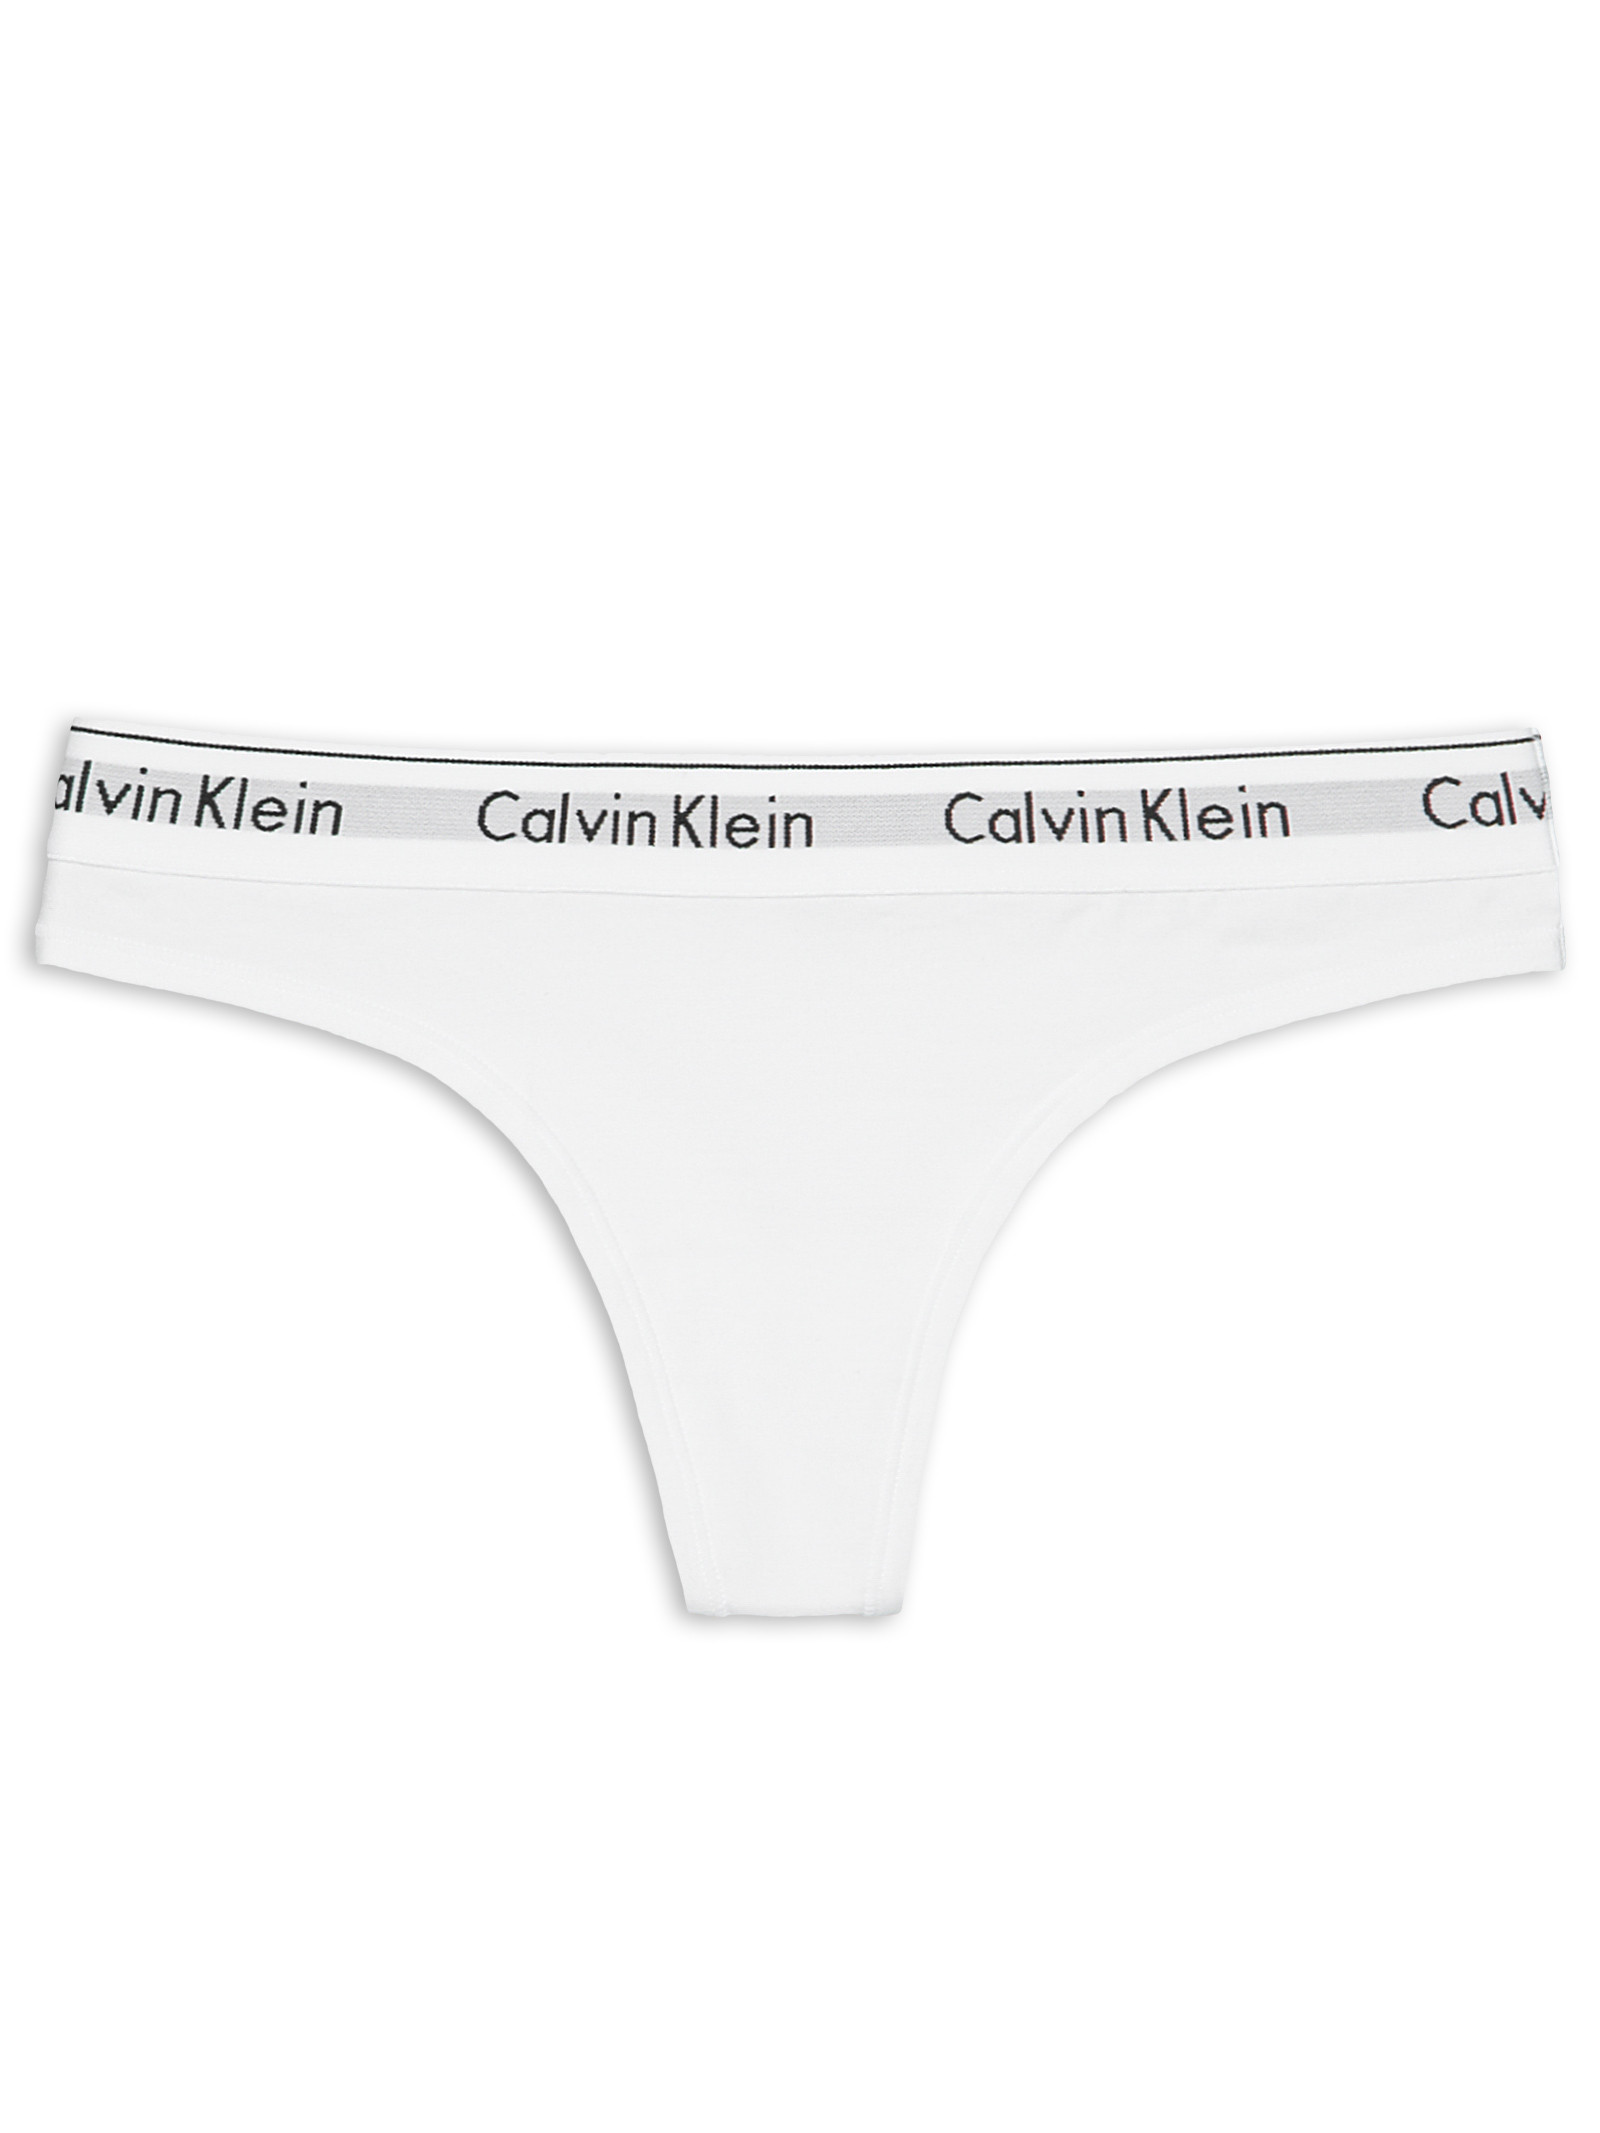 Calcinha Calvin Klein Boyshort Cotton Branco Branco